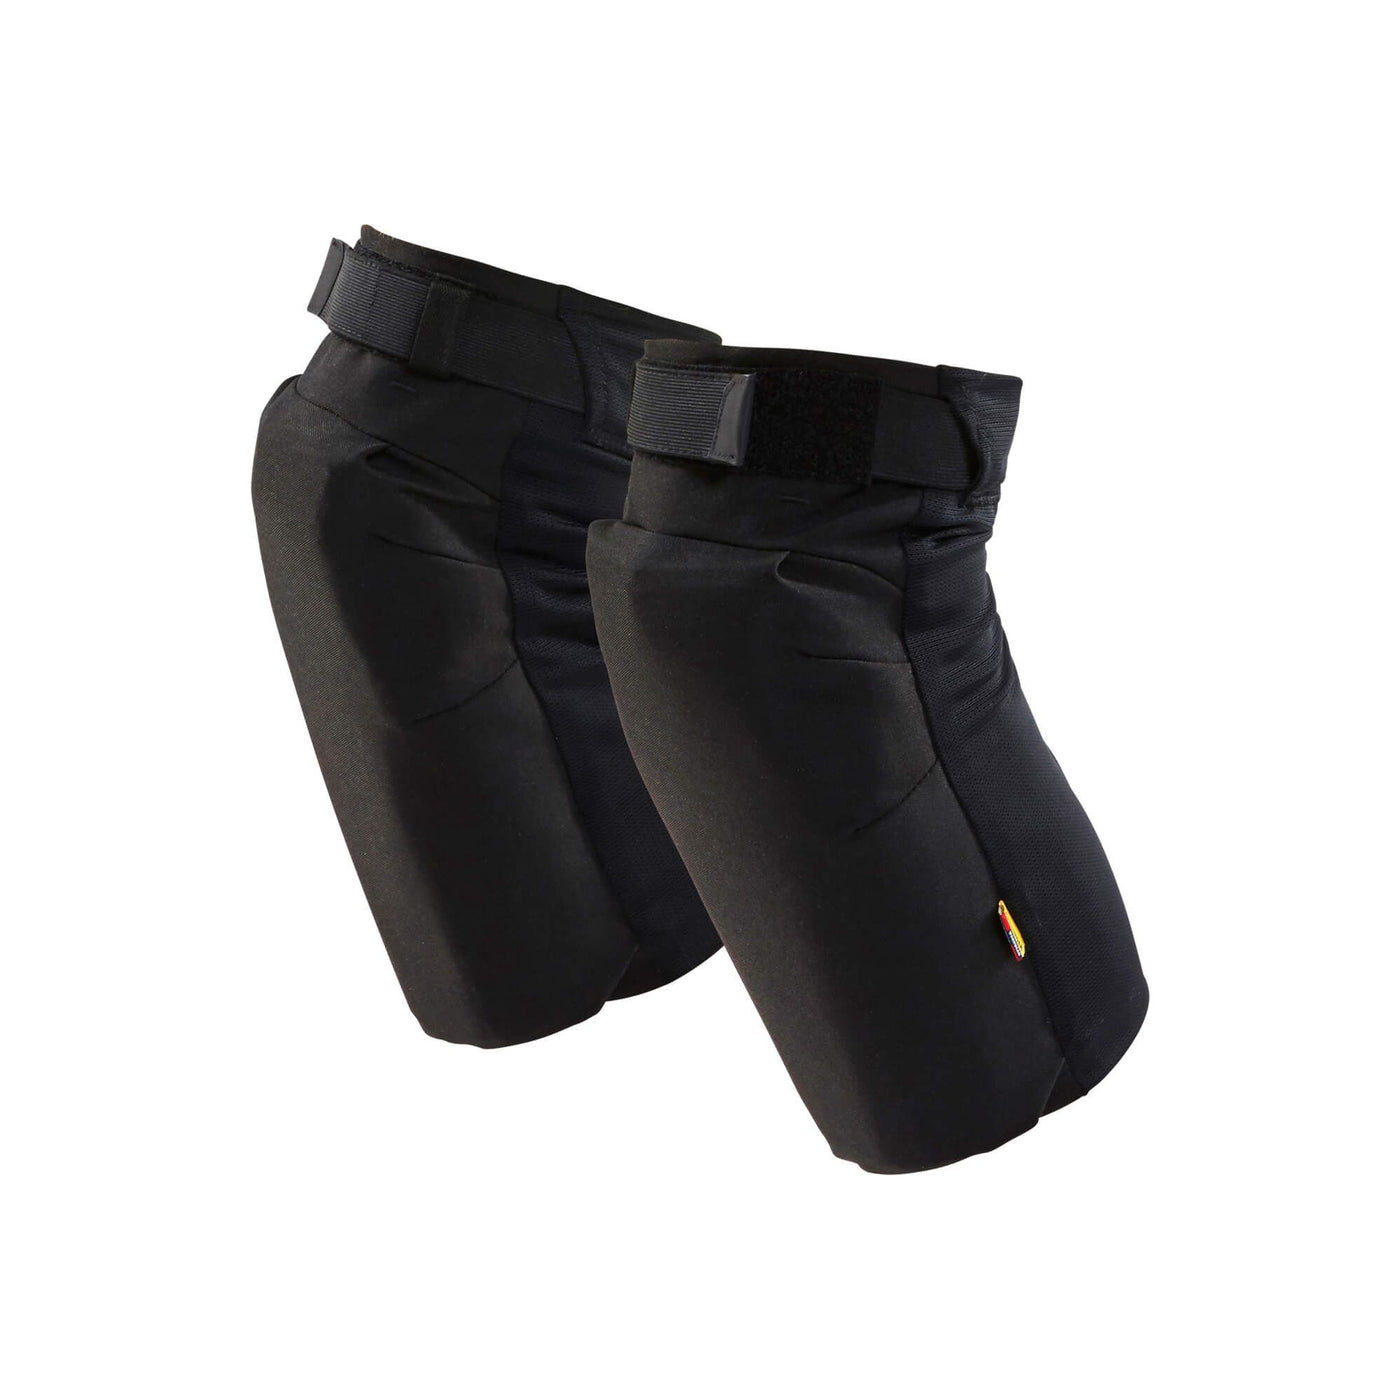 Blaklader 4067 Knee Pad Pocket Tube Black Left#colour_black